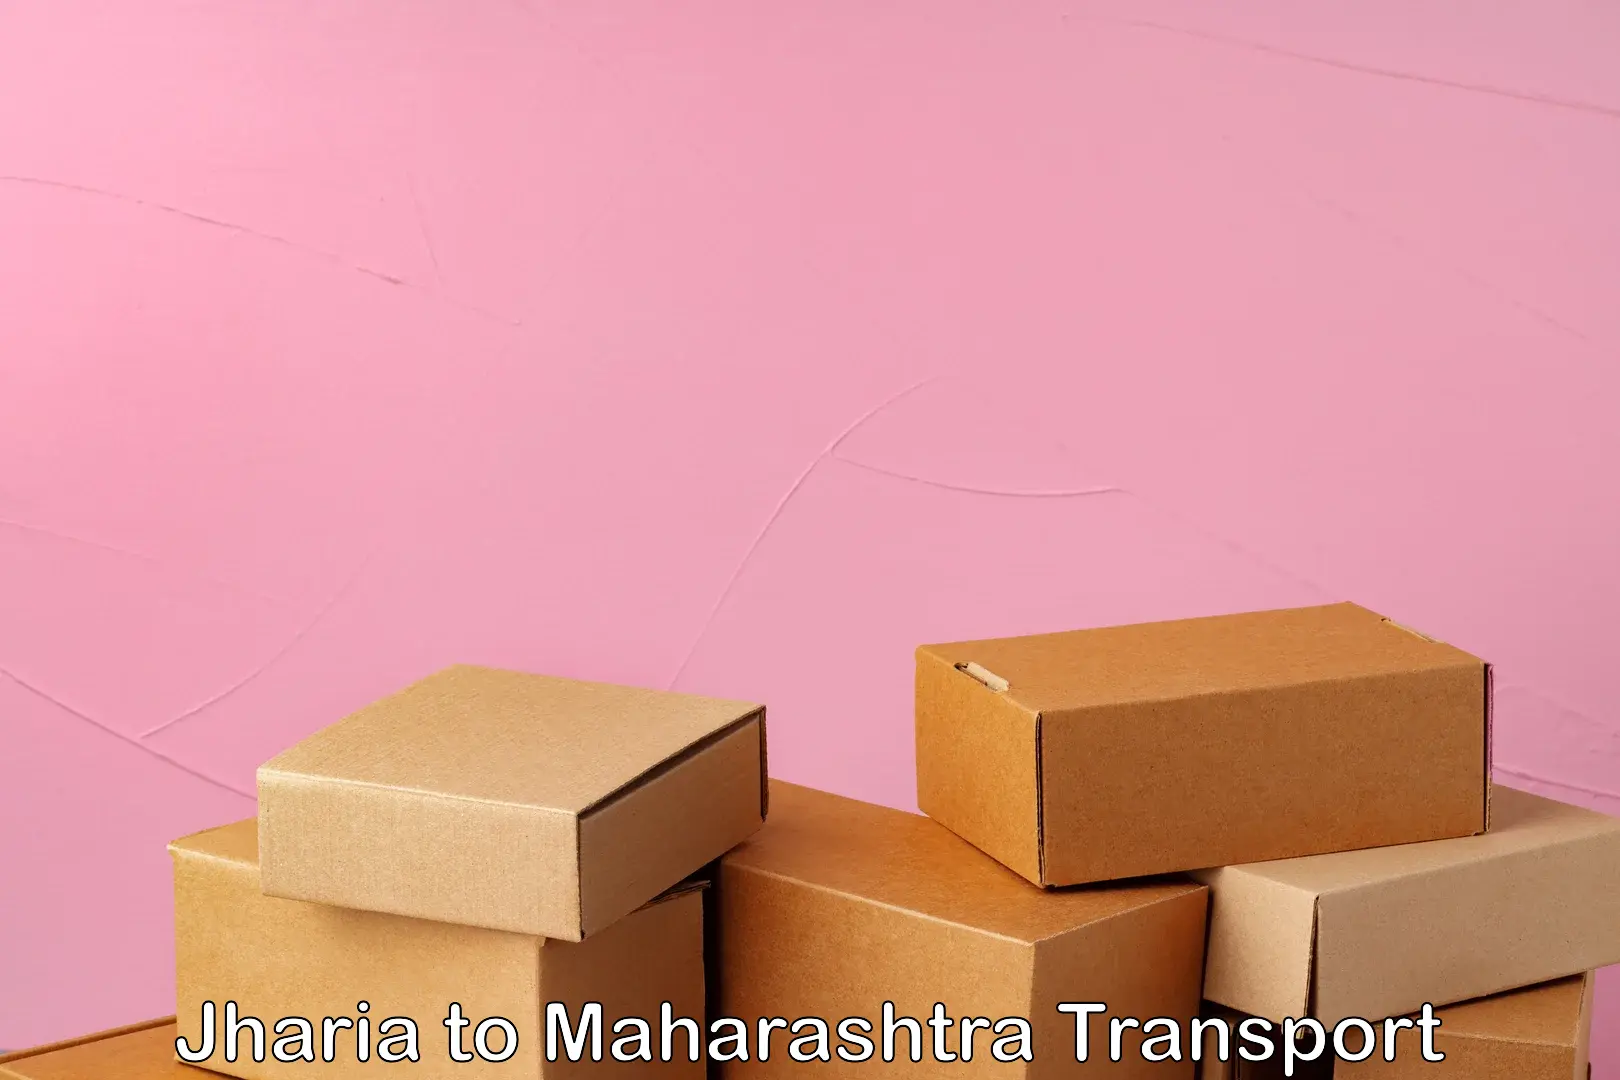 Furniture transport service in Jharia to Nandura